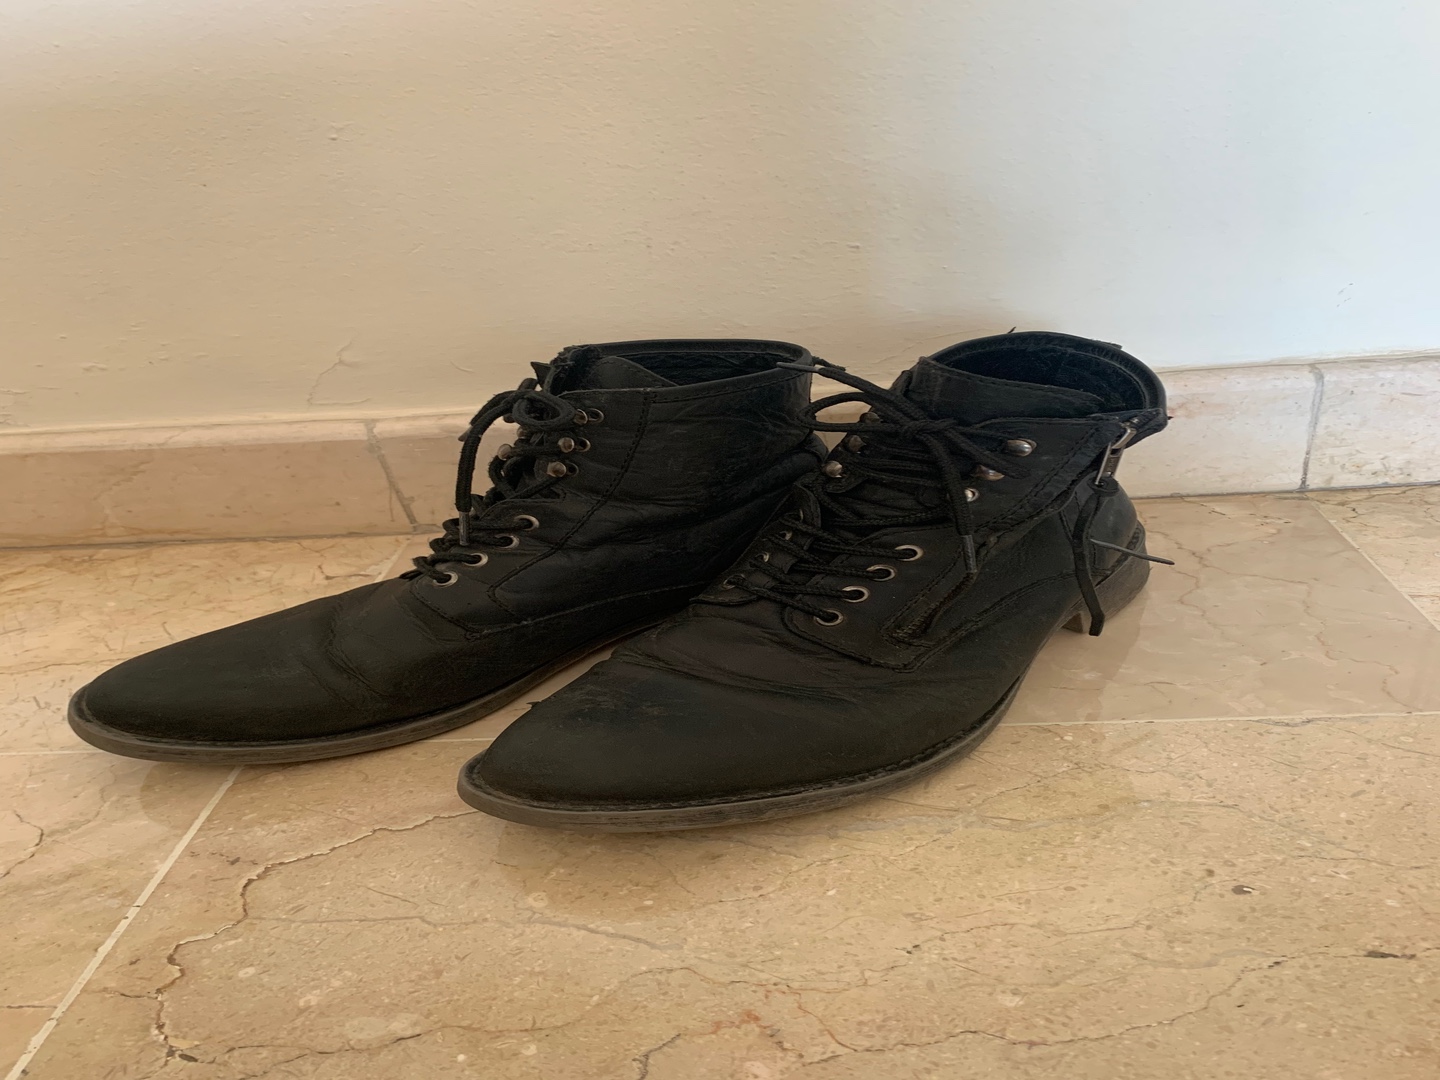 Botas Negras Altas de Leather marca Steve Madden size US11